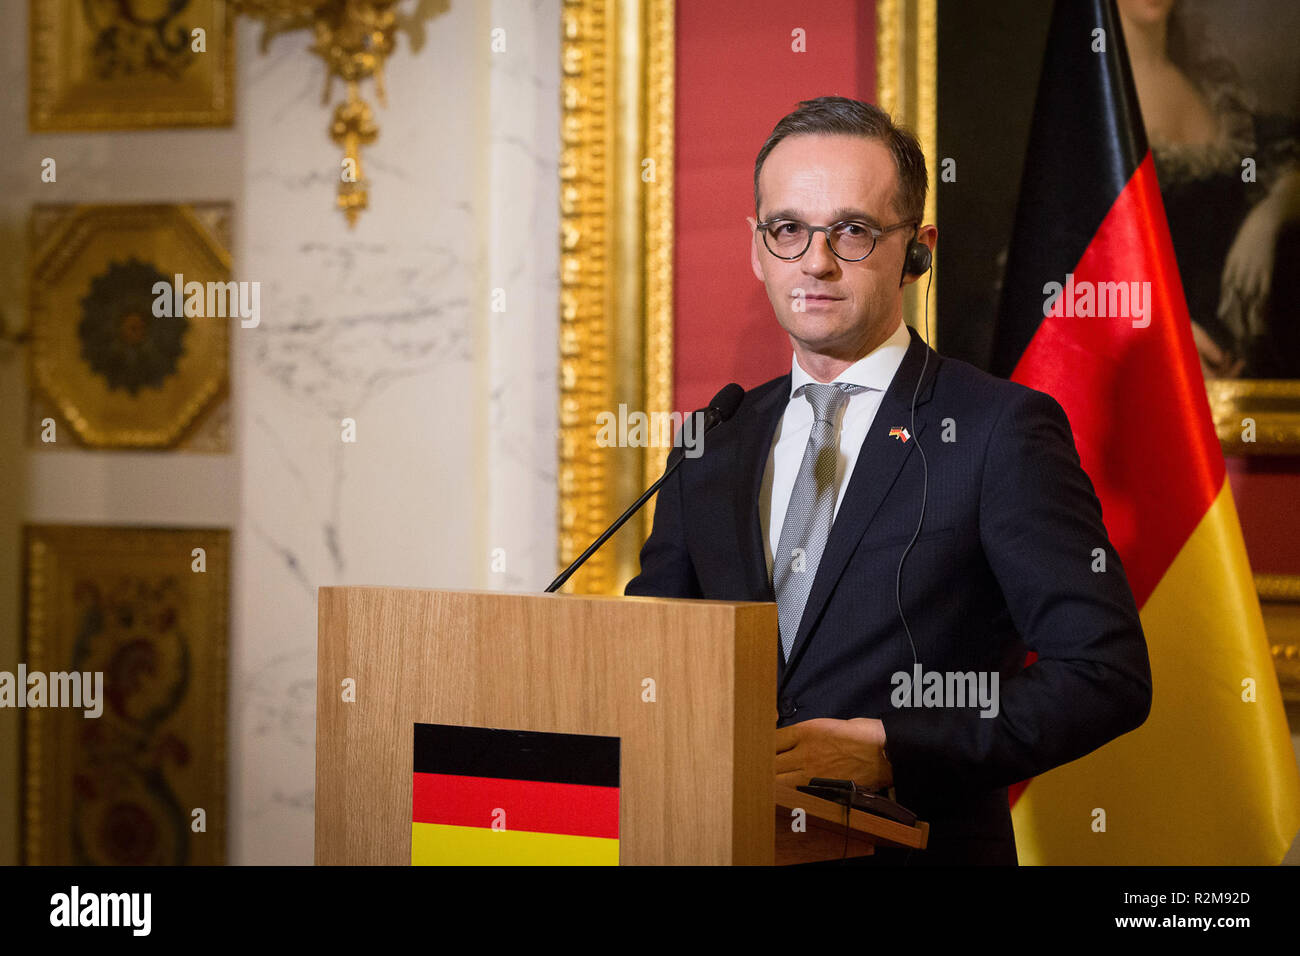 Il Ministro tedesco degli Affari Esteri Heiko Maas durante la conferenza stampa al palazzo di Lazienki a Varsavia in Polonia il 16 marzo 2018 Foto Stock